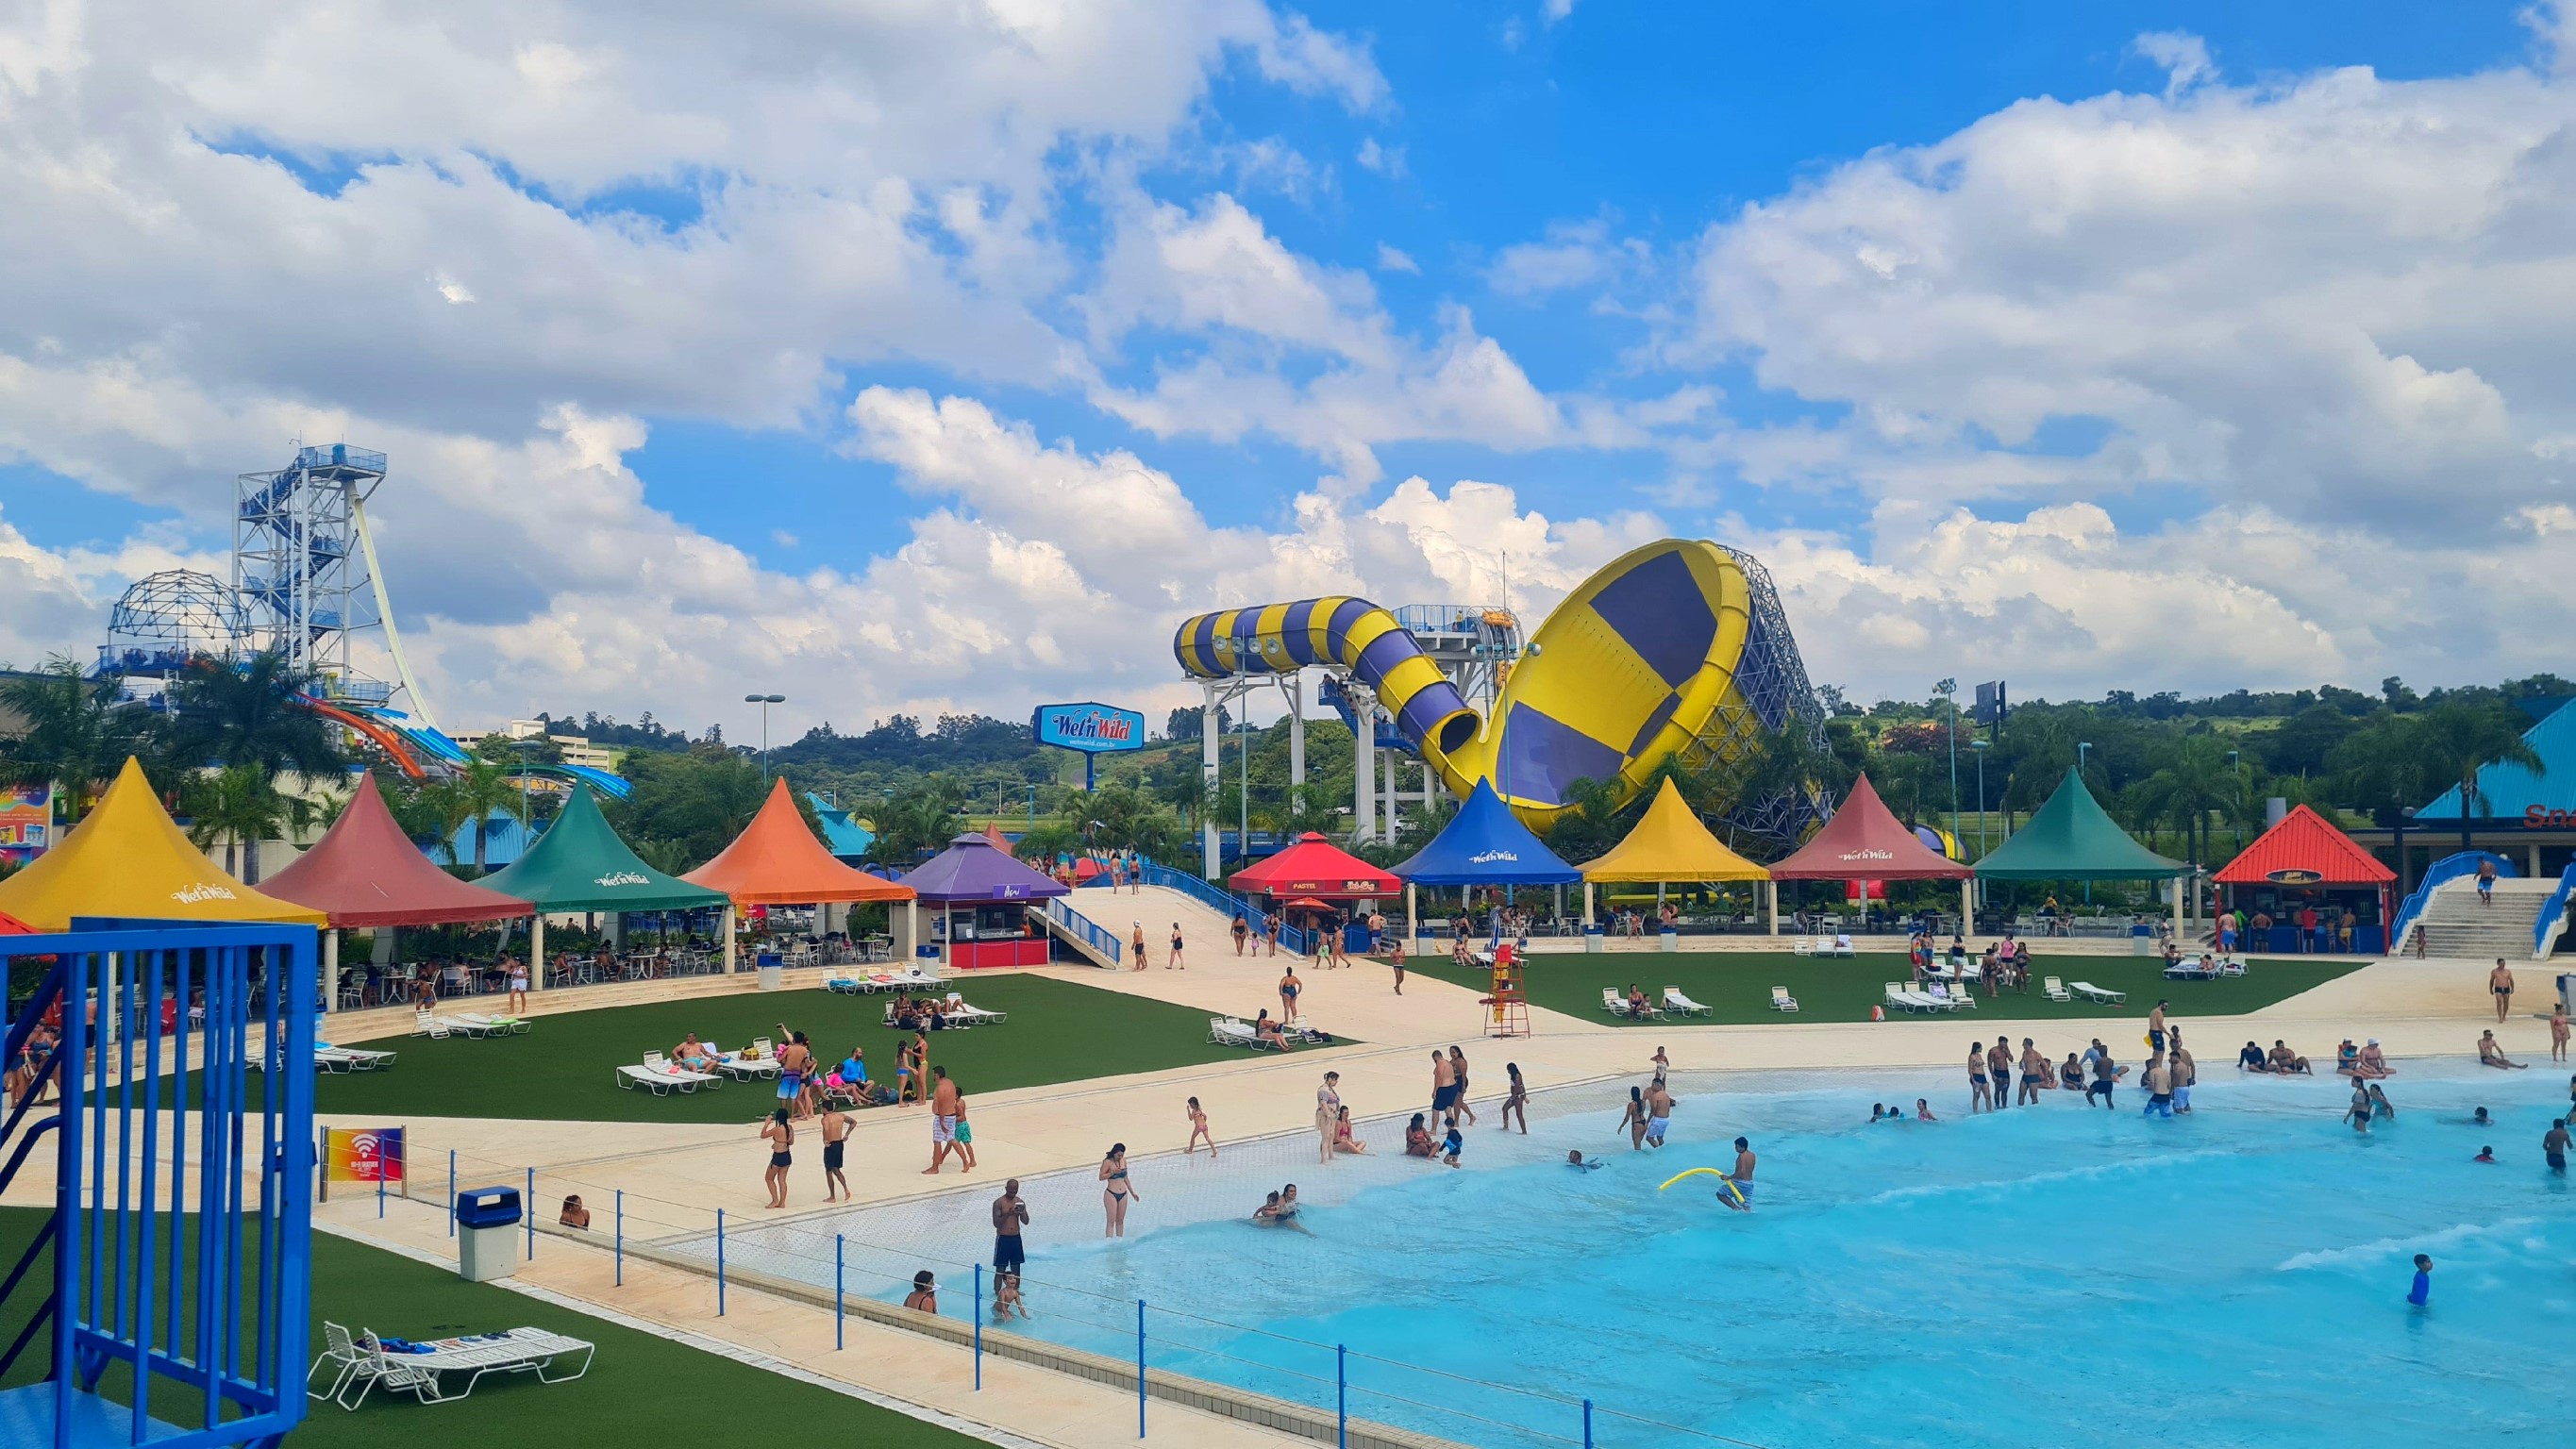 Na fotografia é possível observar uma piscina de ondas cercada por tendas coloridas. Ao fundo, vê-se um enorme brinquedo que se parece com um funil amarelo e roxo.